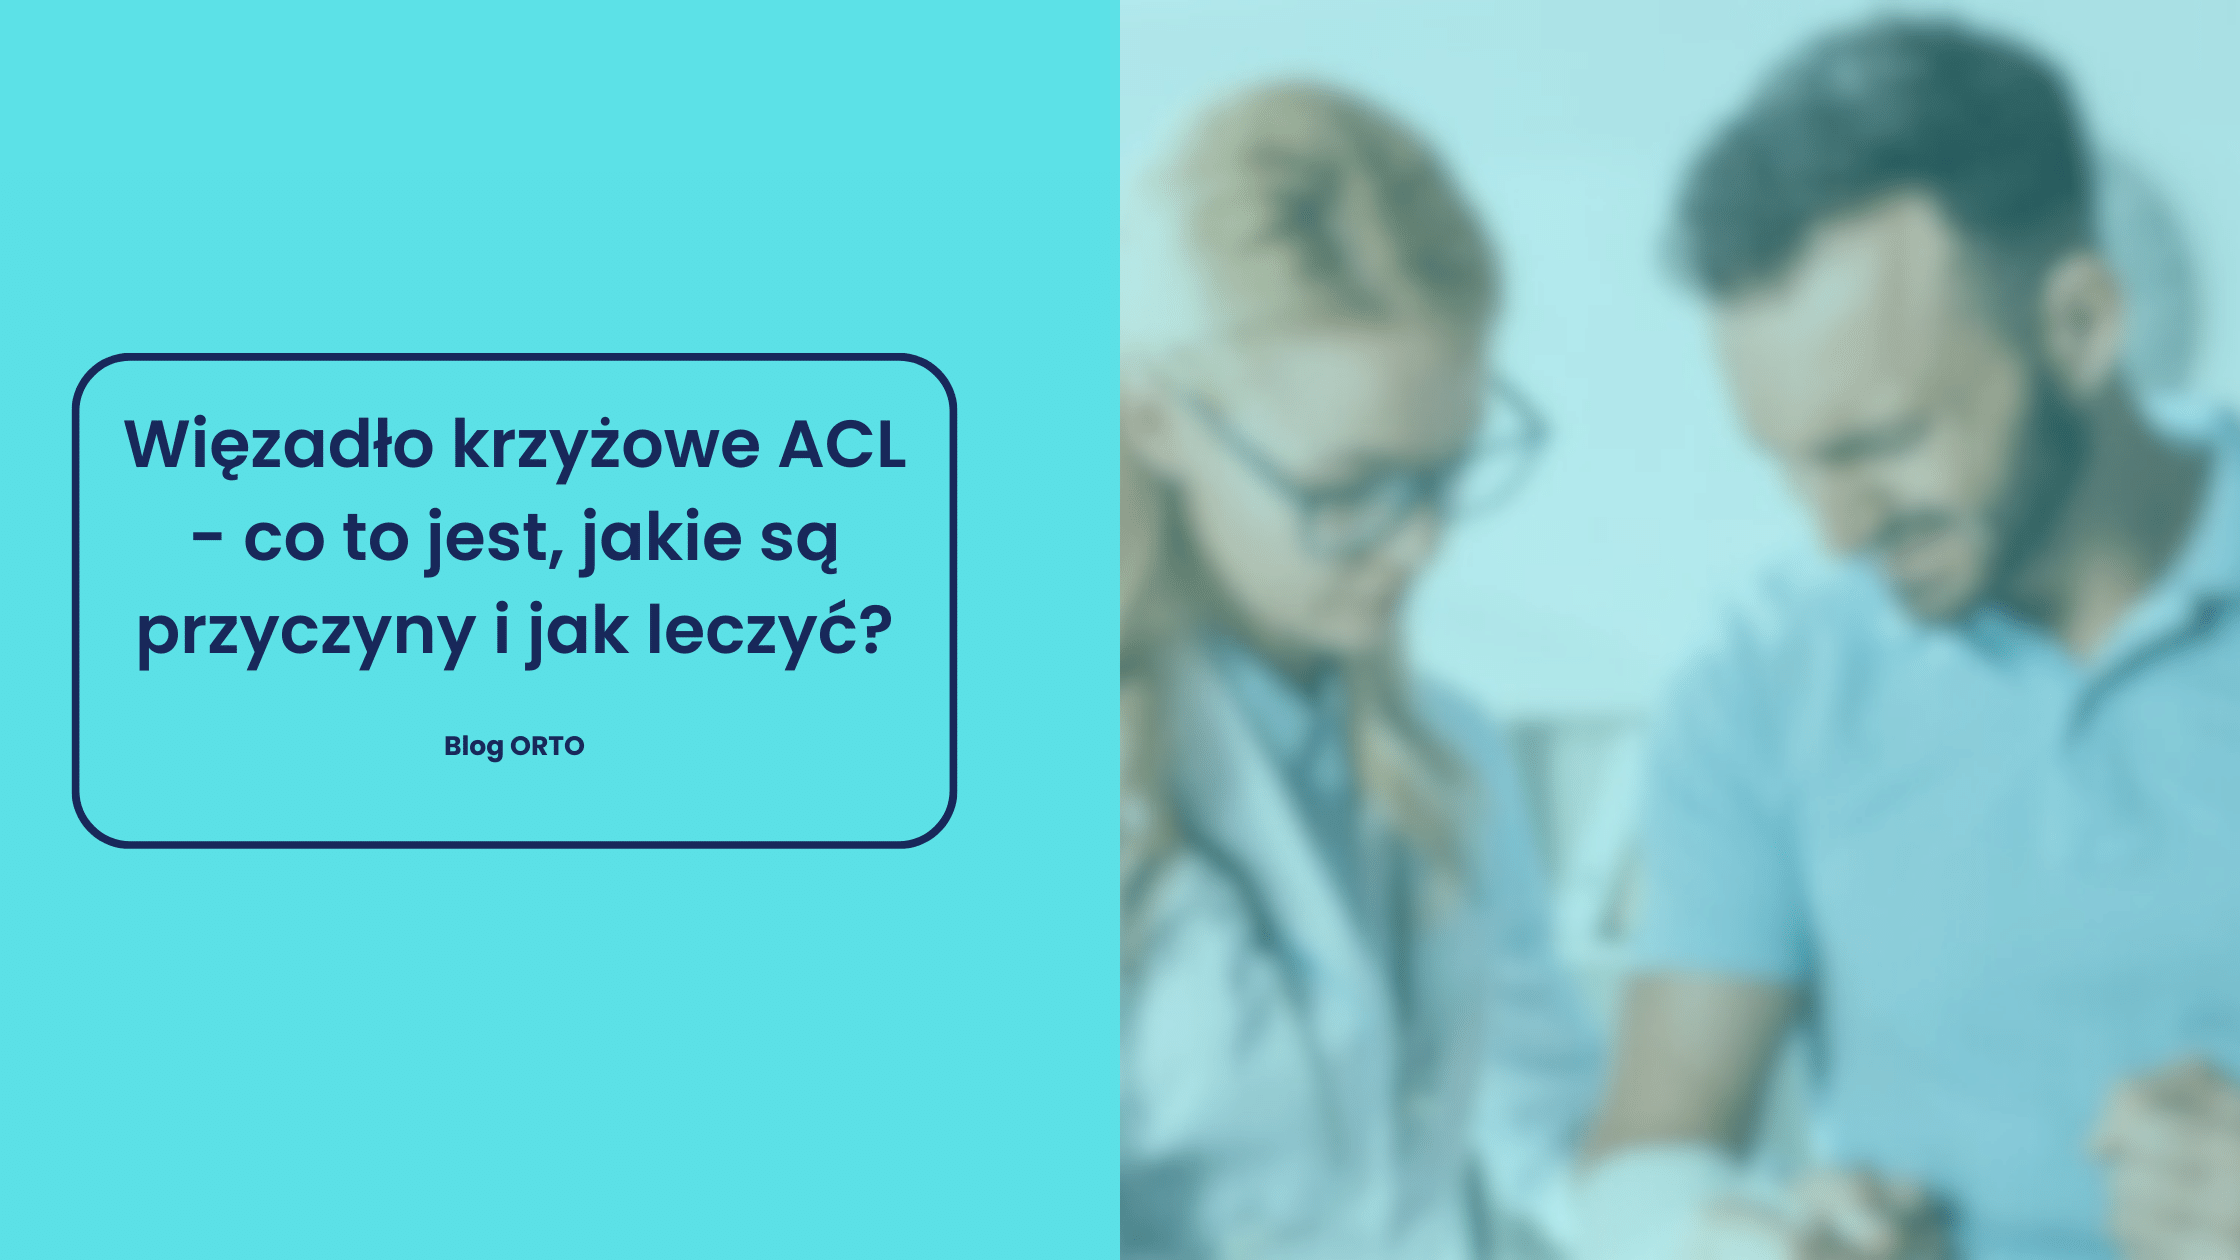 Więzadło krzyżowe ACL - co to jest, jakie są przyczyny i jak leczyć? - blog orto.pl